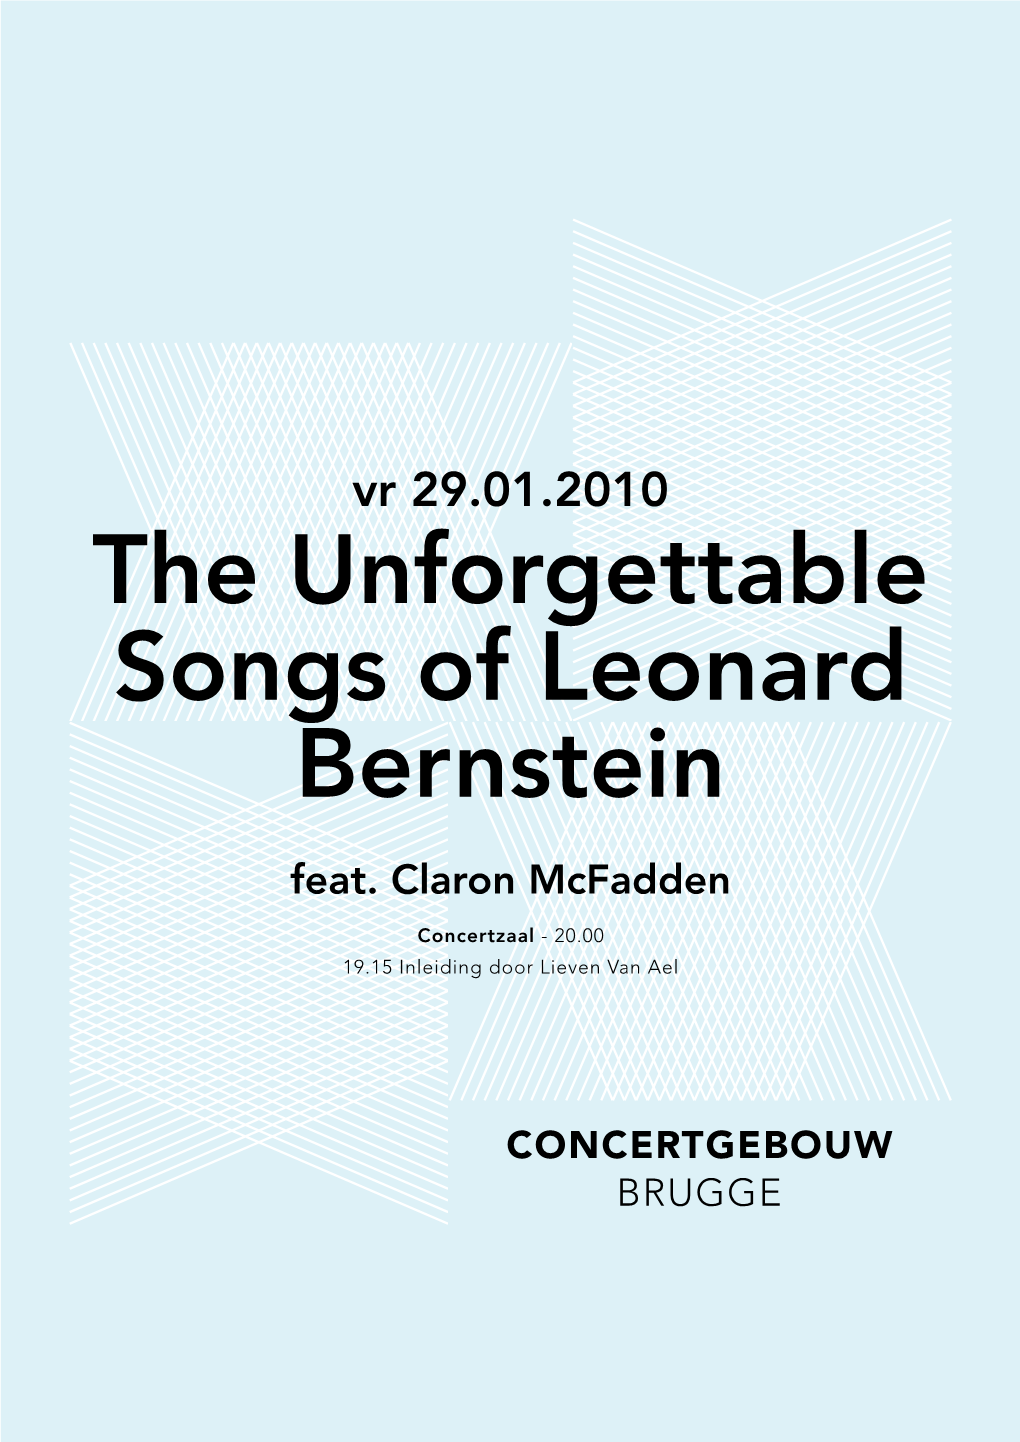 The Unforgettable Songs of Leonard Bernstein